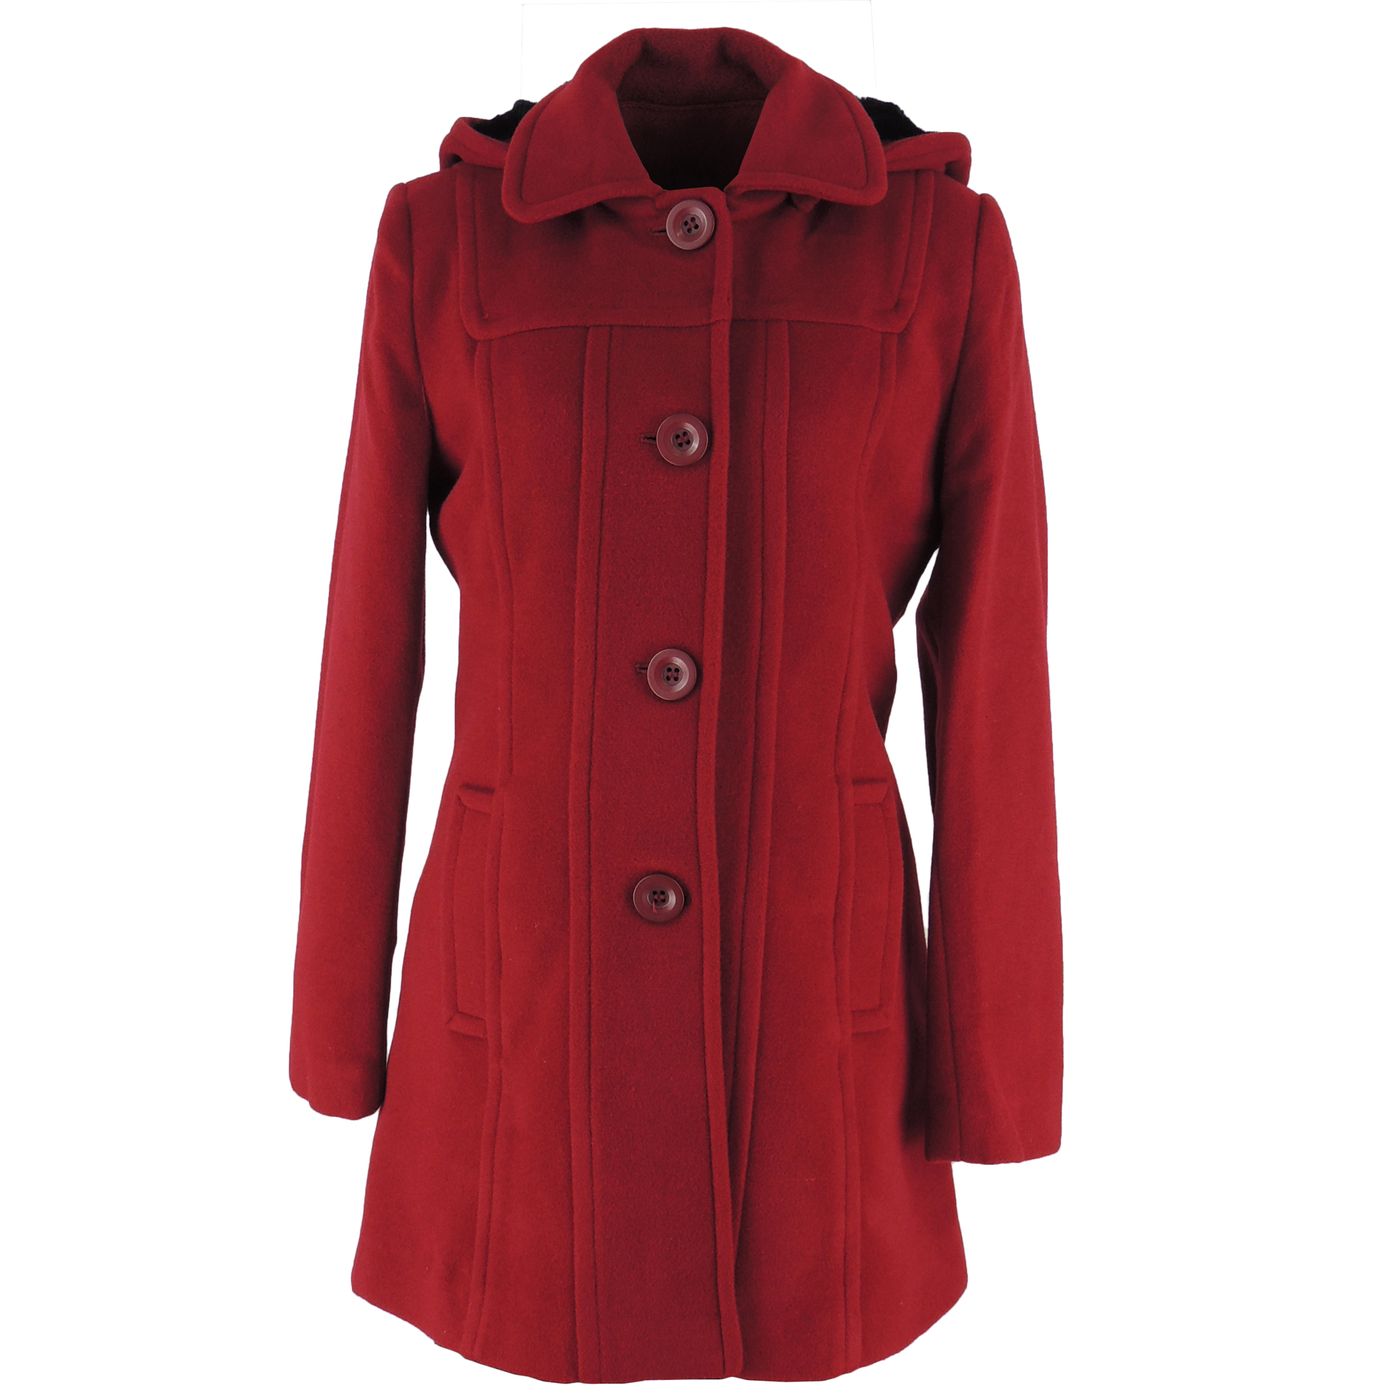 casaco de frio feminino com capuz